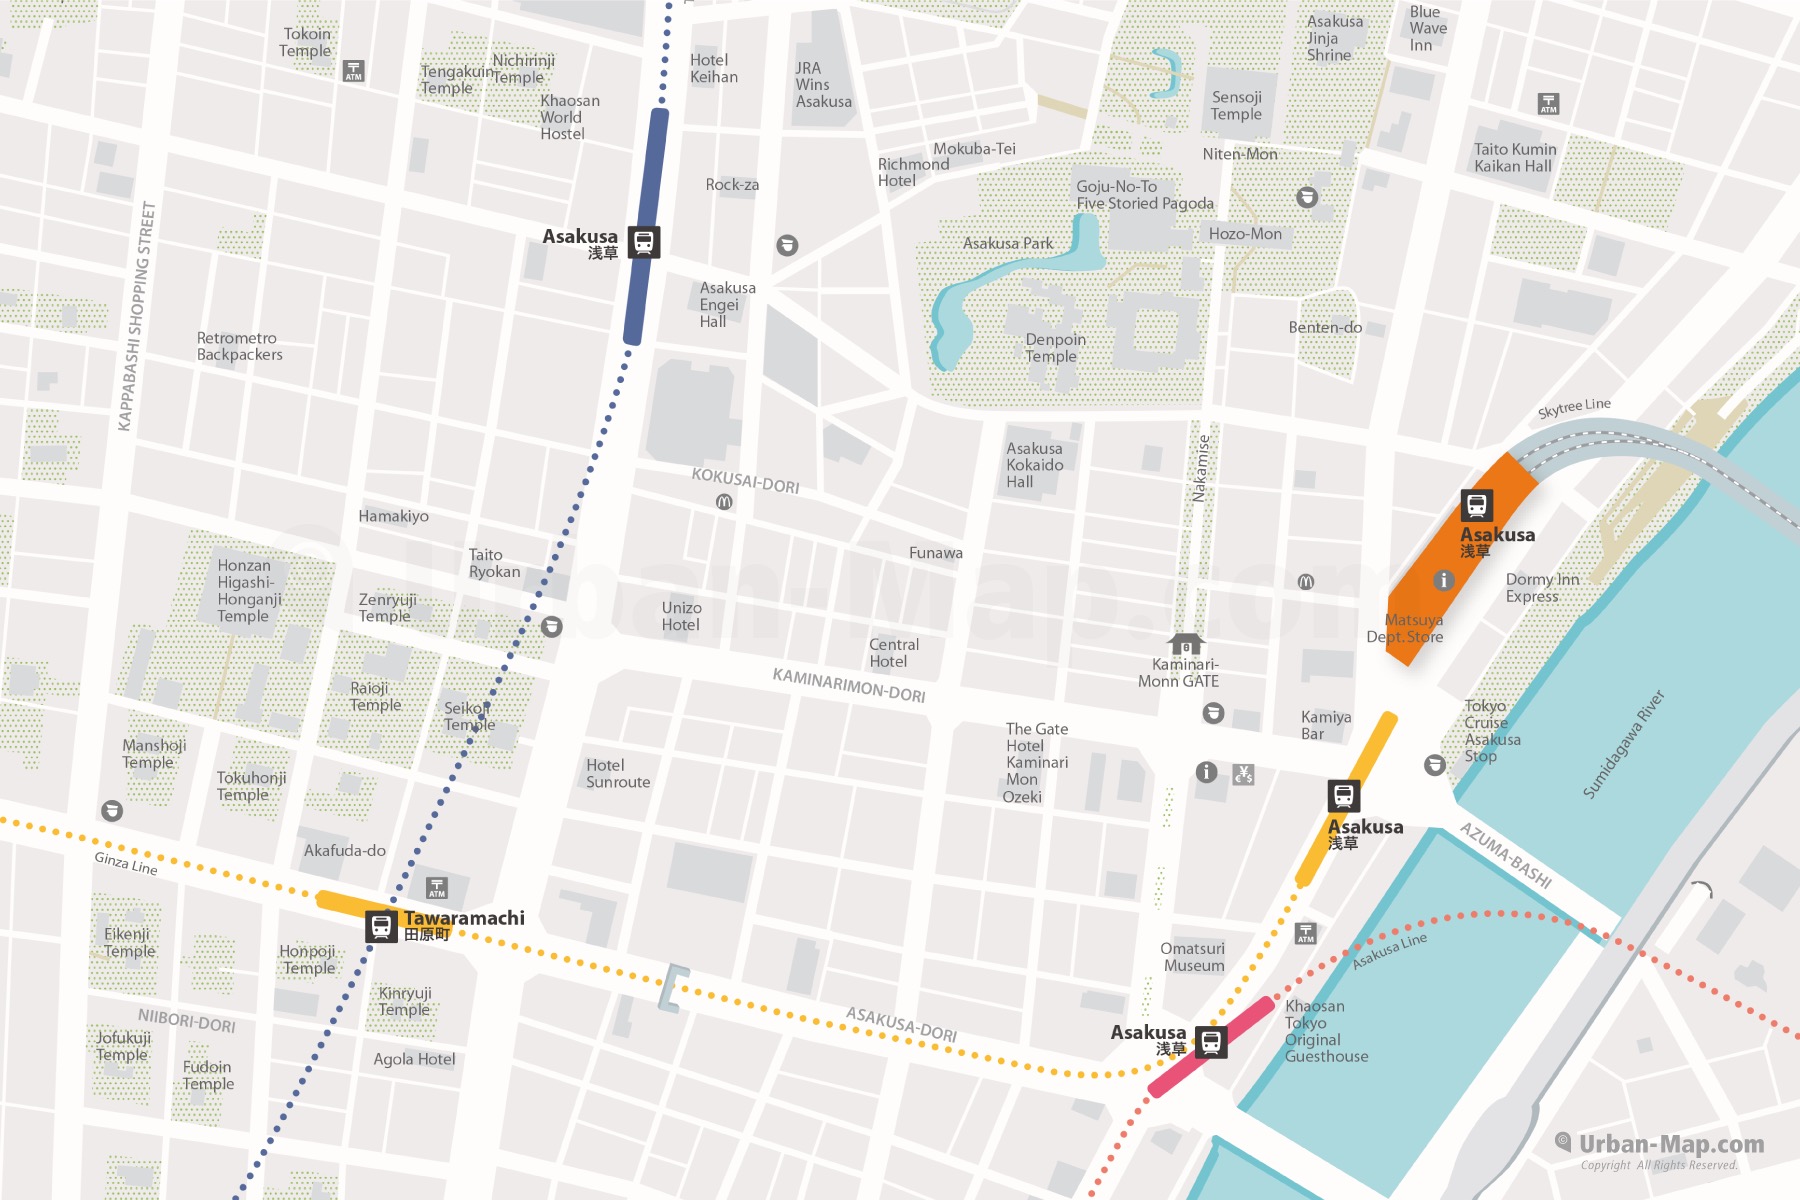 Tokyo Asakusa City Map shows Asakusa Station, Kaminarimon, Tawaramachi